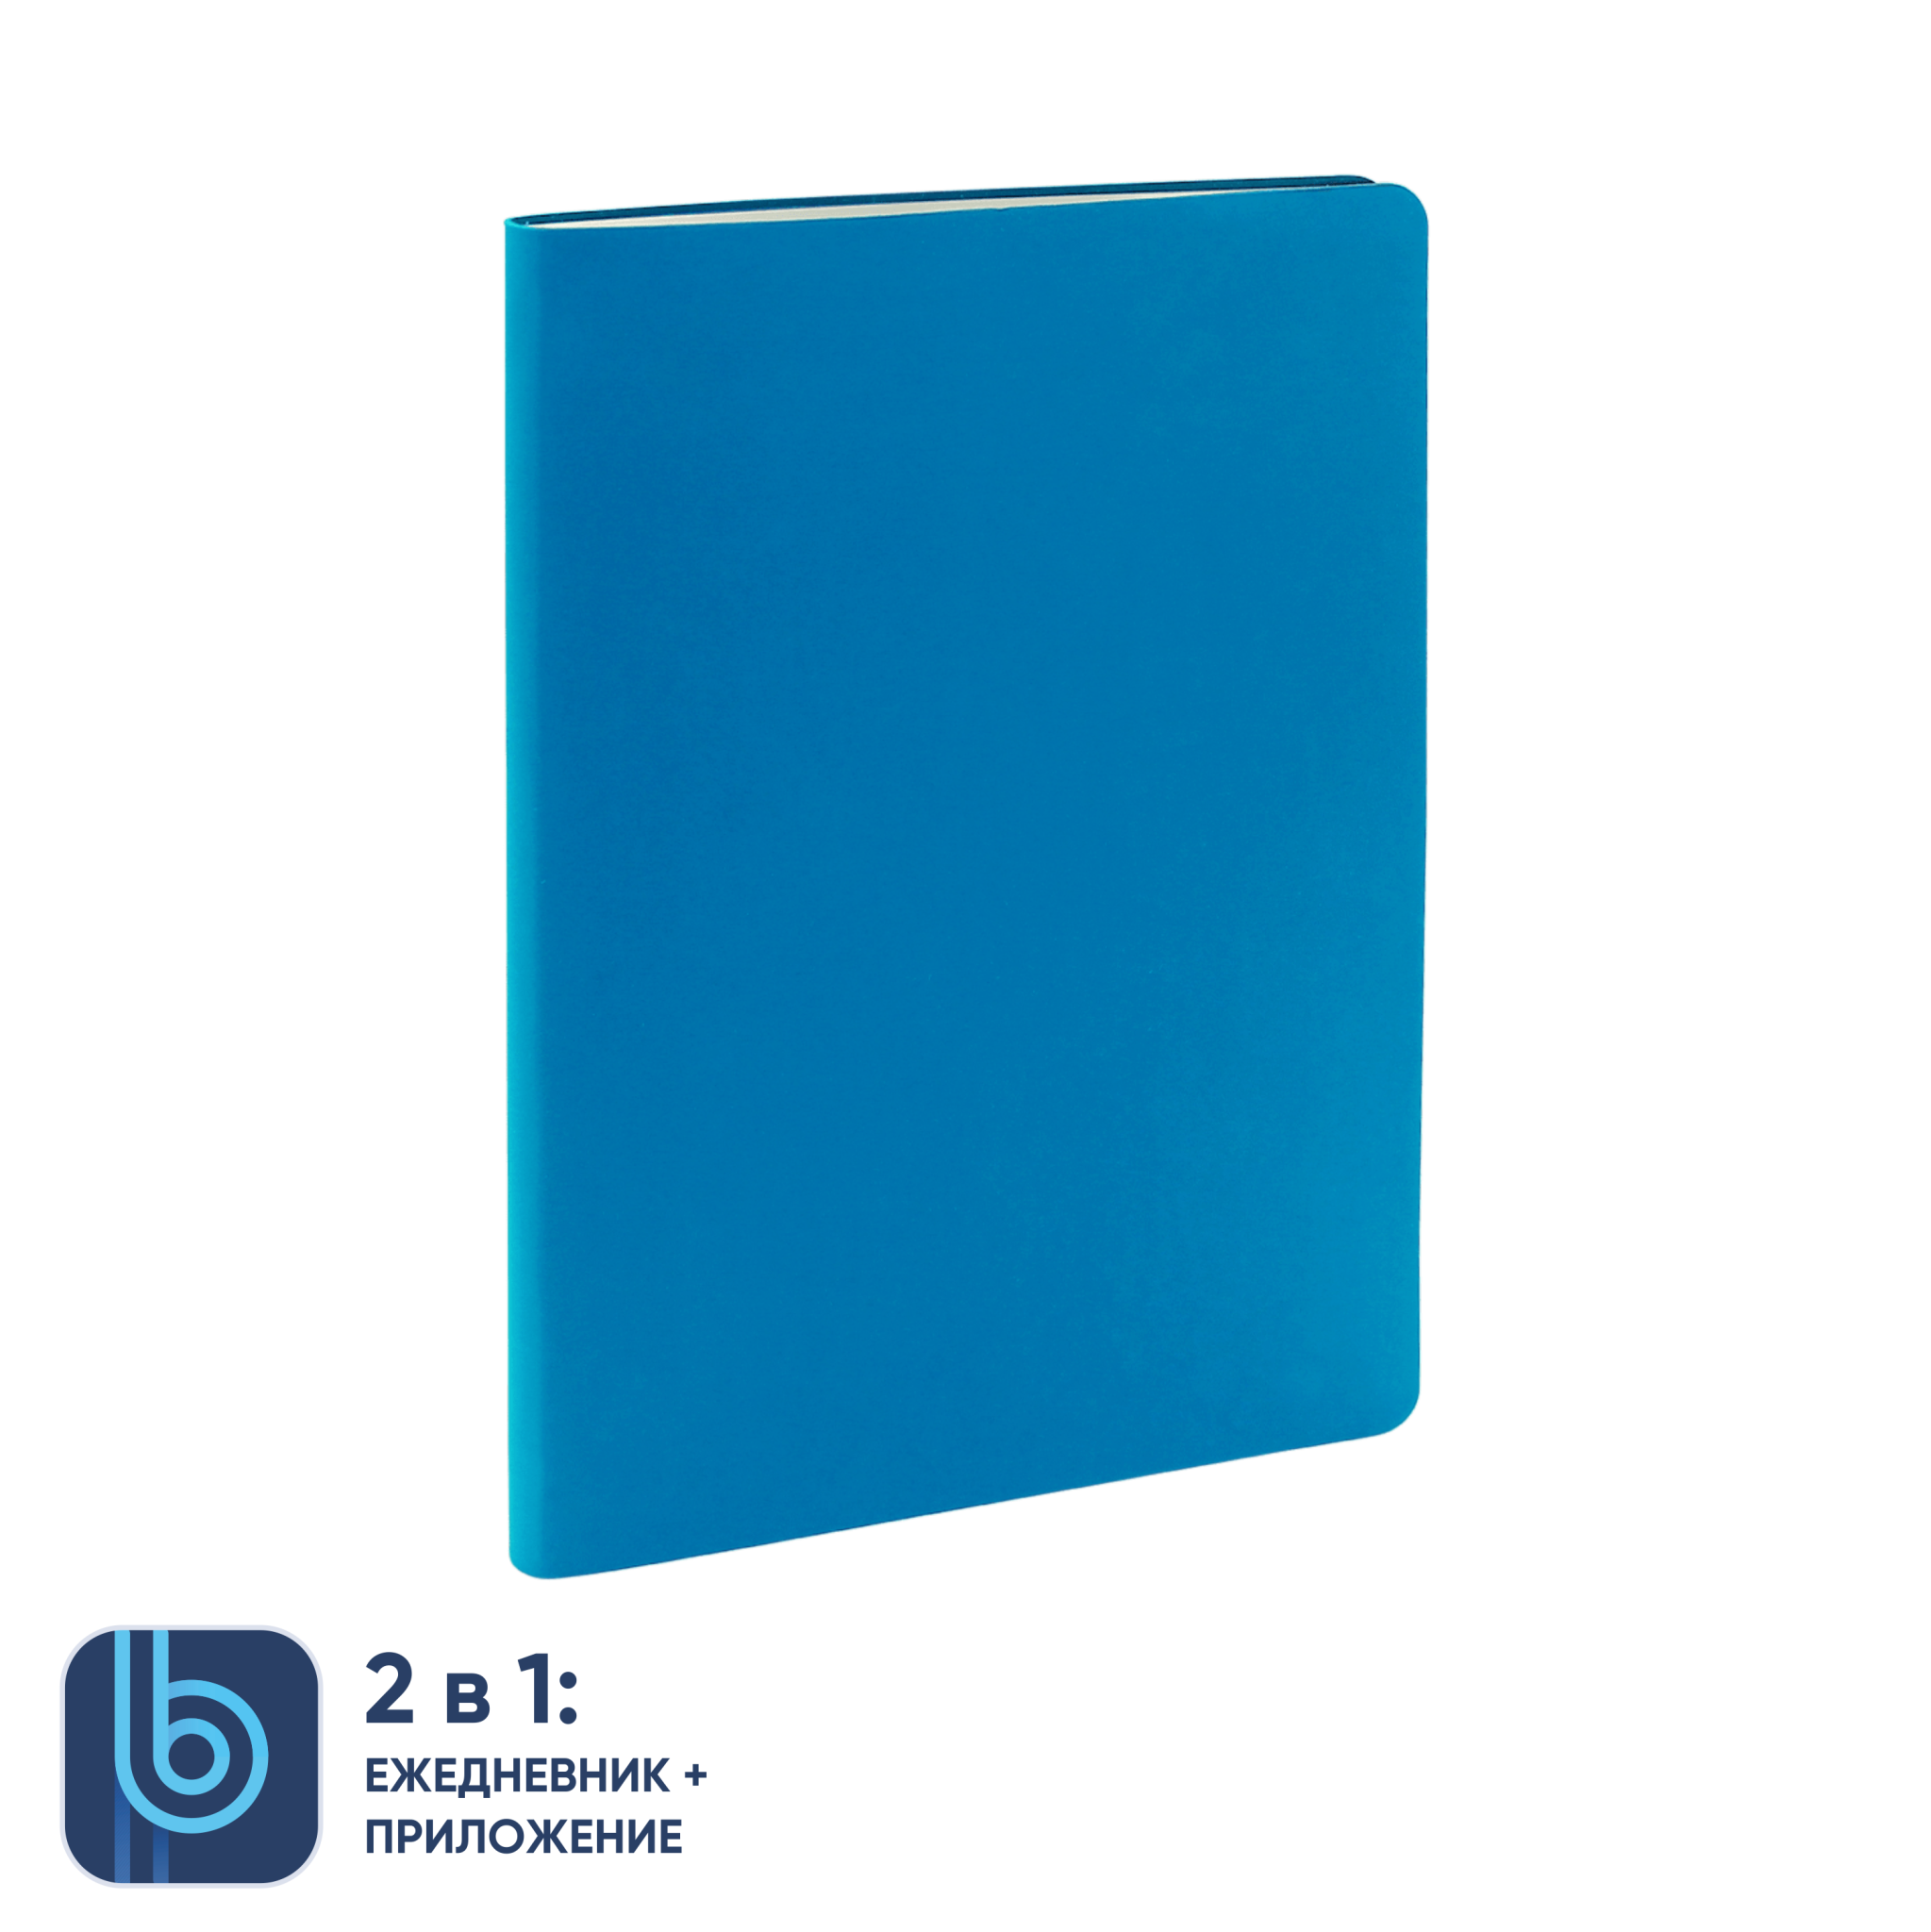 Ежедневник Bplanner.01 в подарочной коробке (голубой), голубой, картон